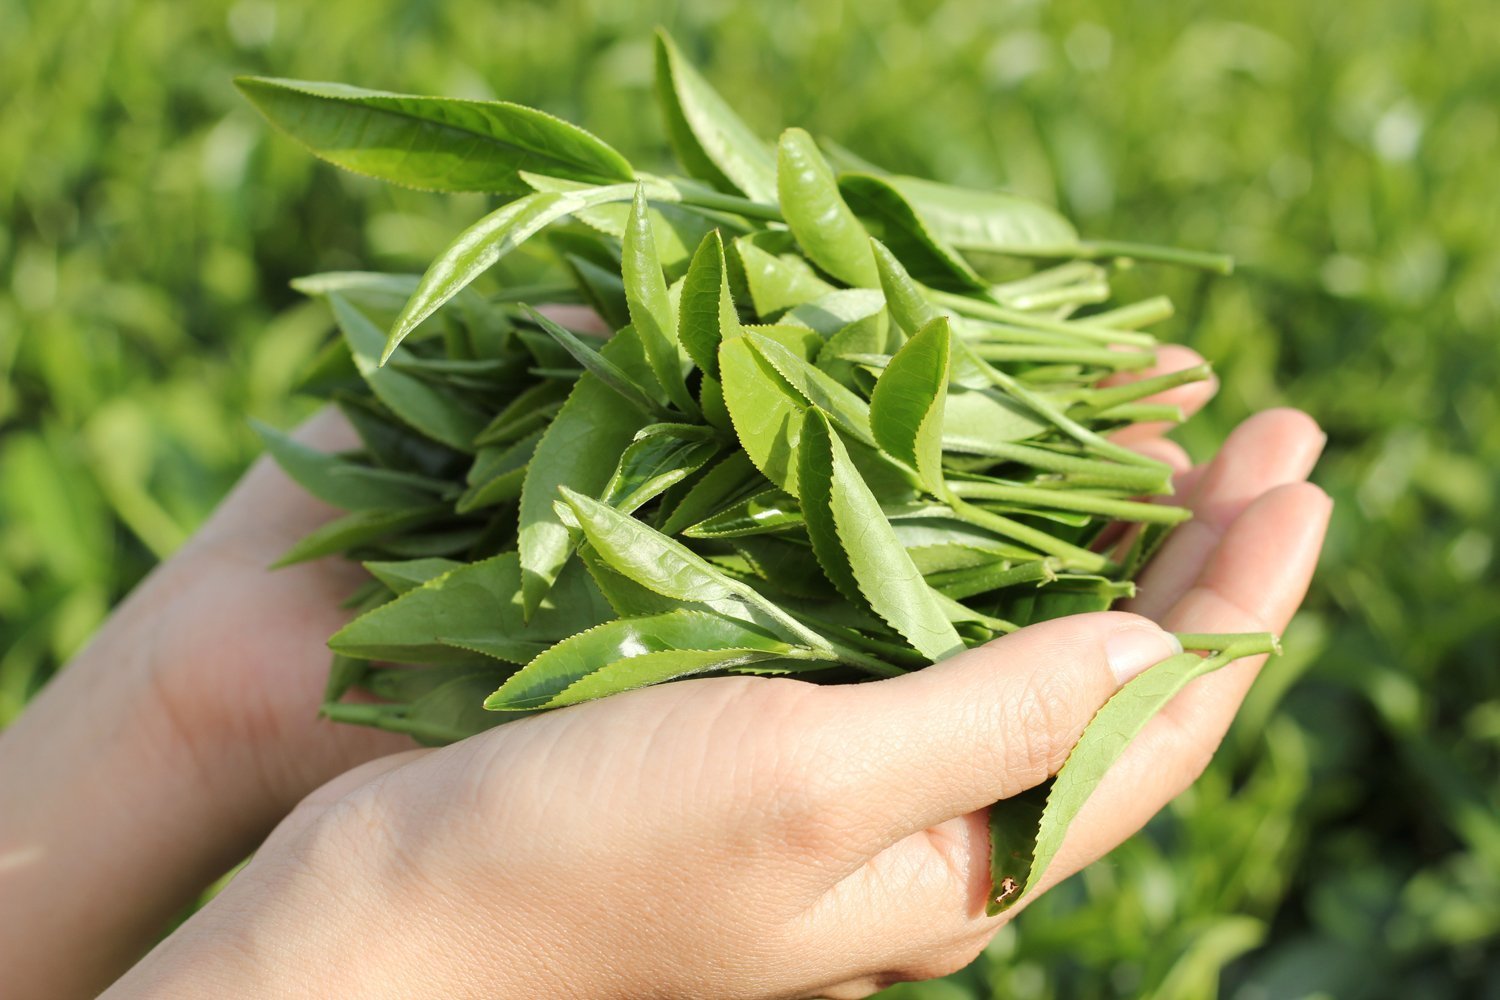 Trà hữu cơ là sản phẩm được chế biến từ cây trà được trồng và phát triển trong điều kiện tự nhiên, không sử dụng phân bón, hóa chất (Ảnh: sưu tầm)